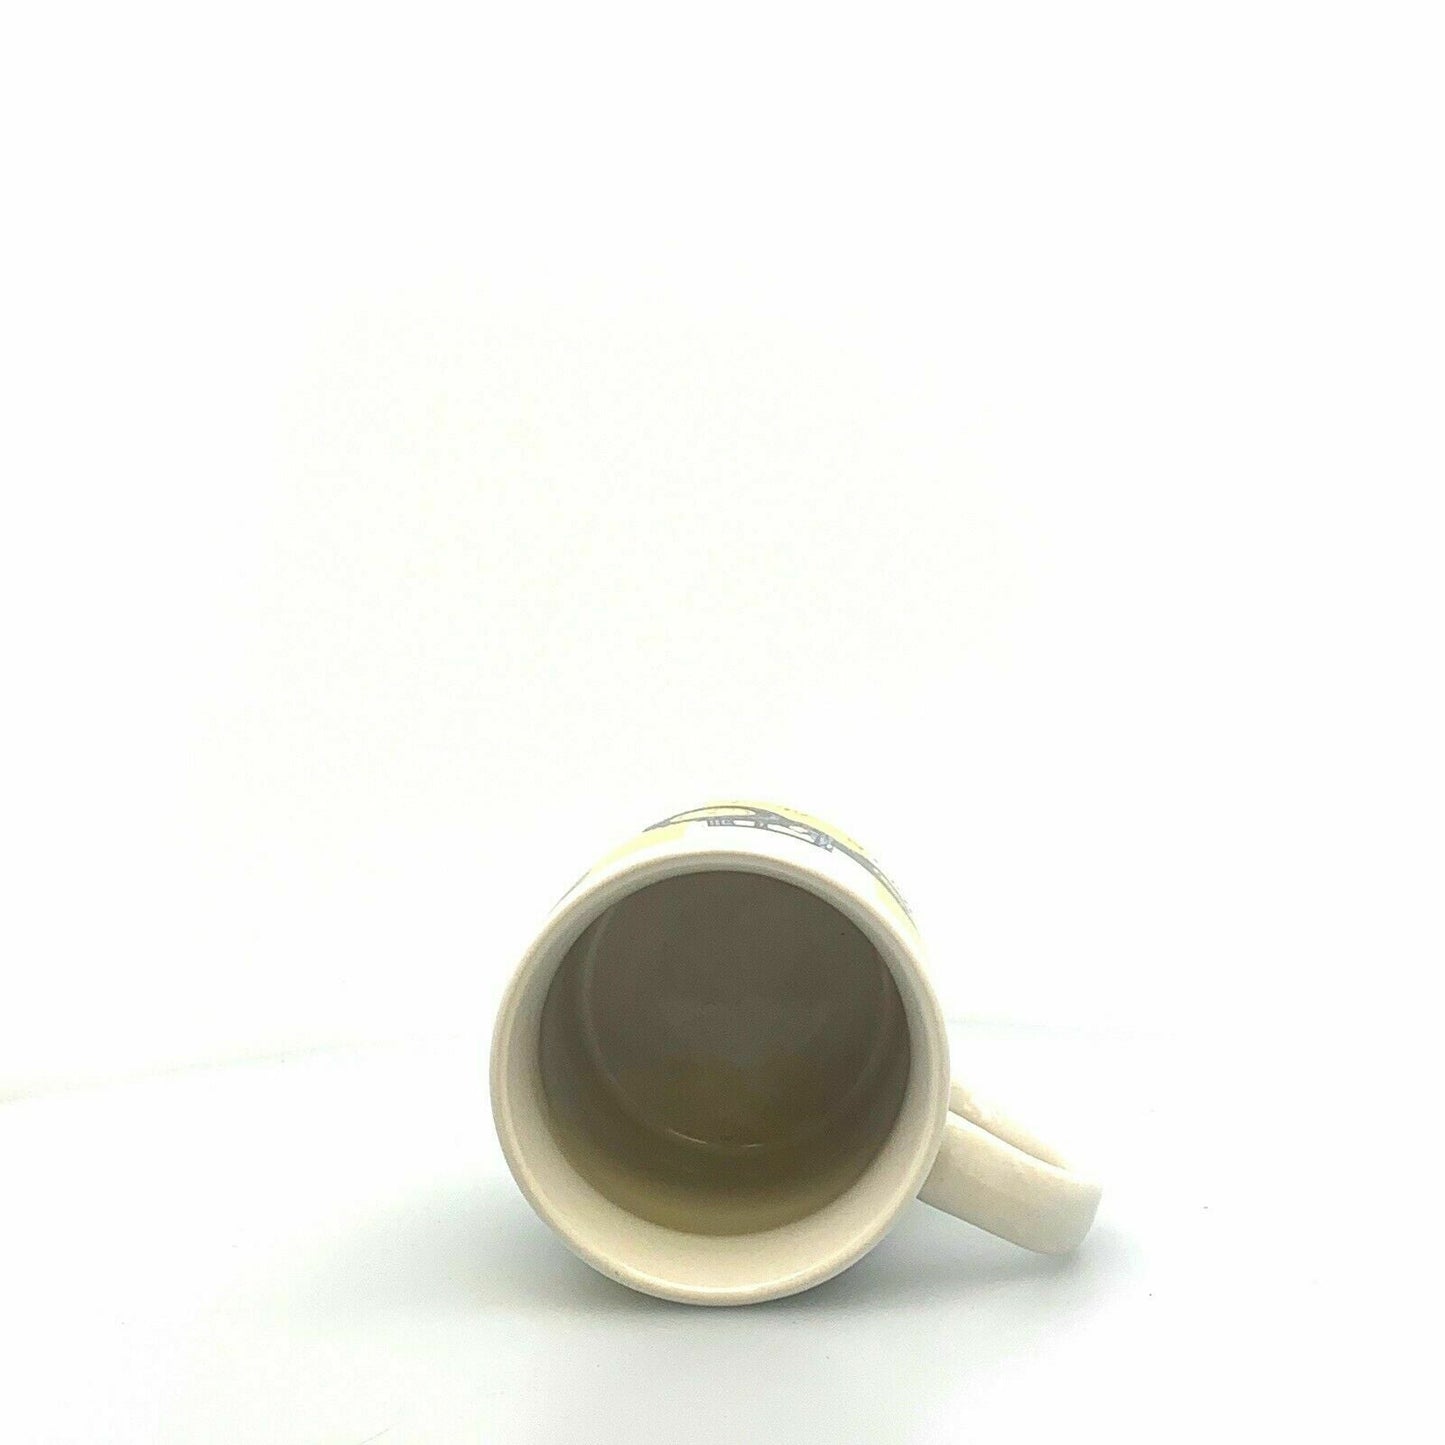 John Deere Coffee Cup Mug “Nothing runs Like A Deere!” 16 Oz